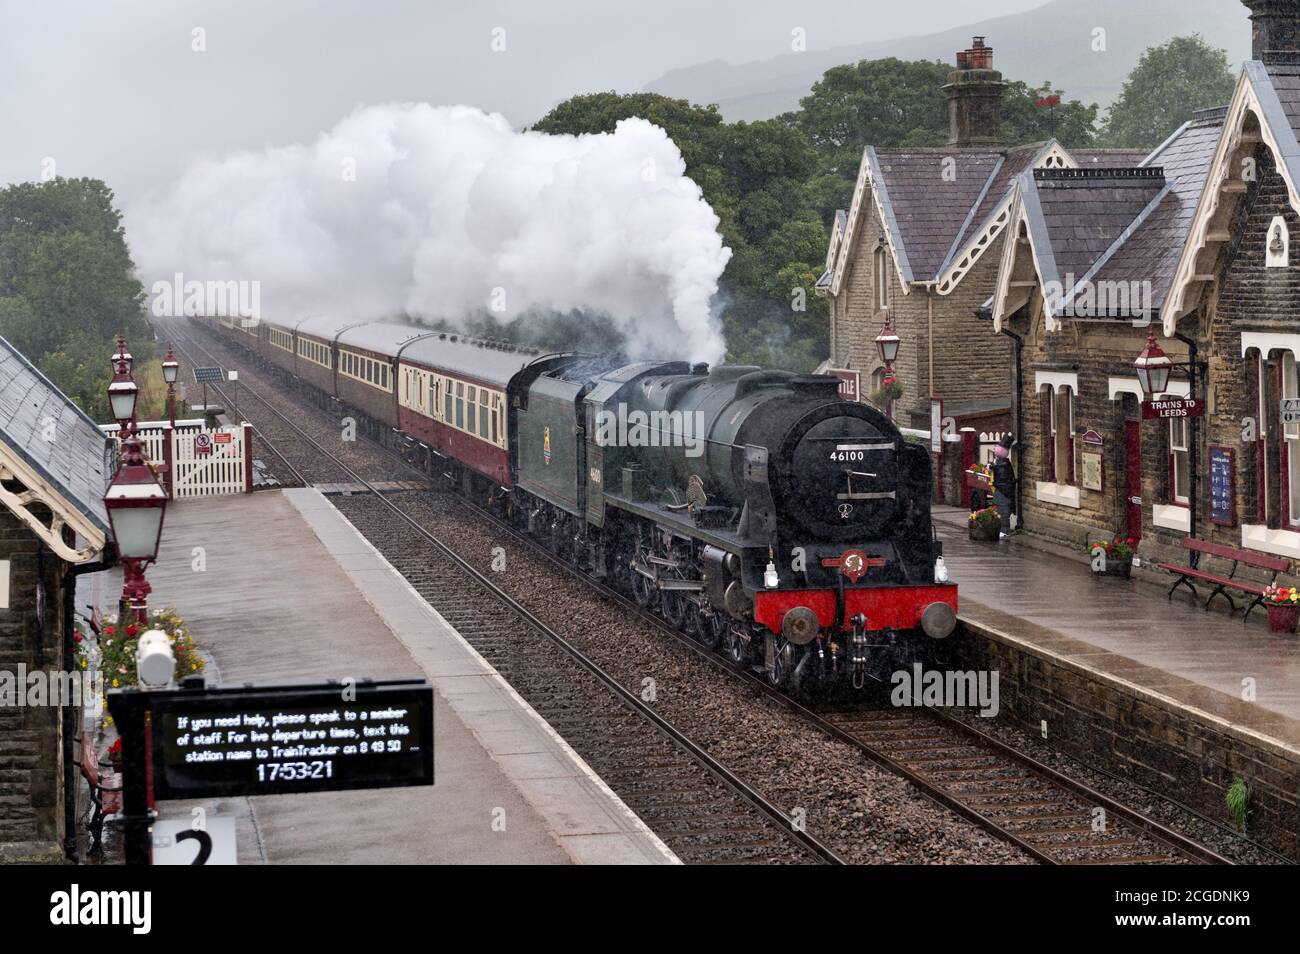 En versant de la vapeur de pluie loco 'Royal Scot' avec des passes spéciales 'The Fellsman' Settle Station sur la ligne de chemin de fer Settle-Carlisle, North Yorkshire. Banque D'Images